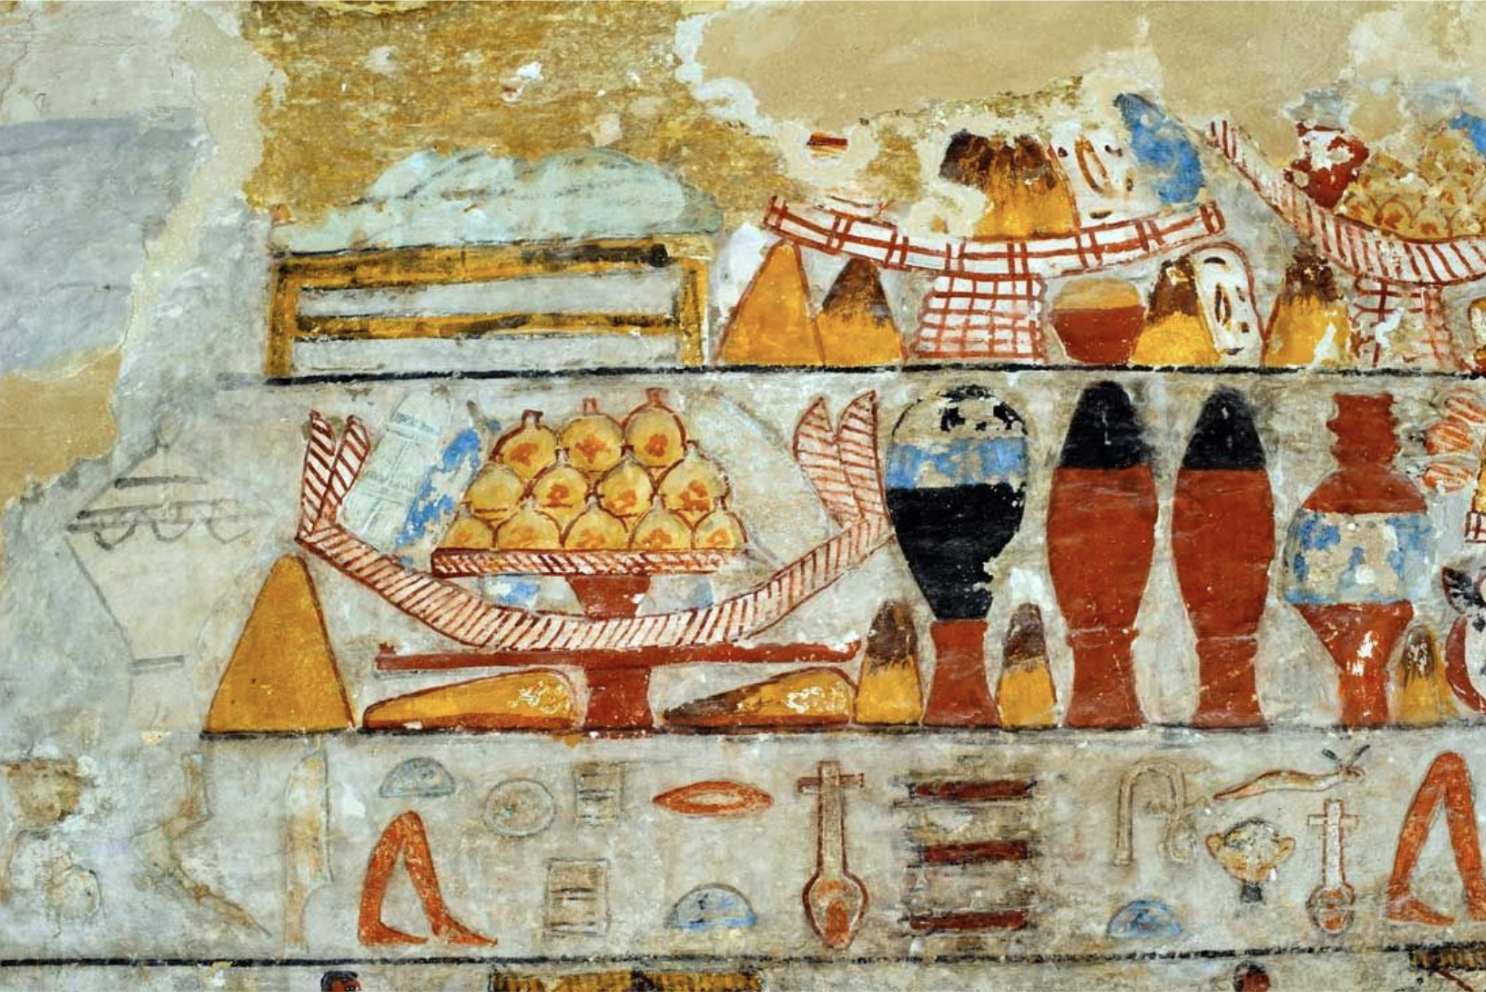 Ancient Egyptian wall art with pomegranates (2,300 BCE)